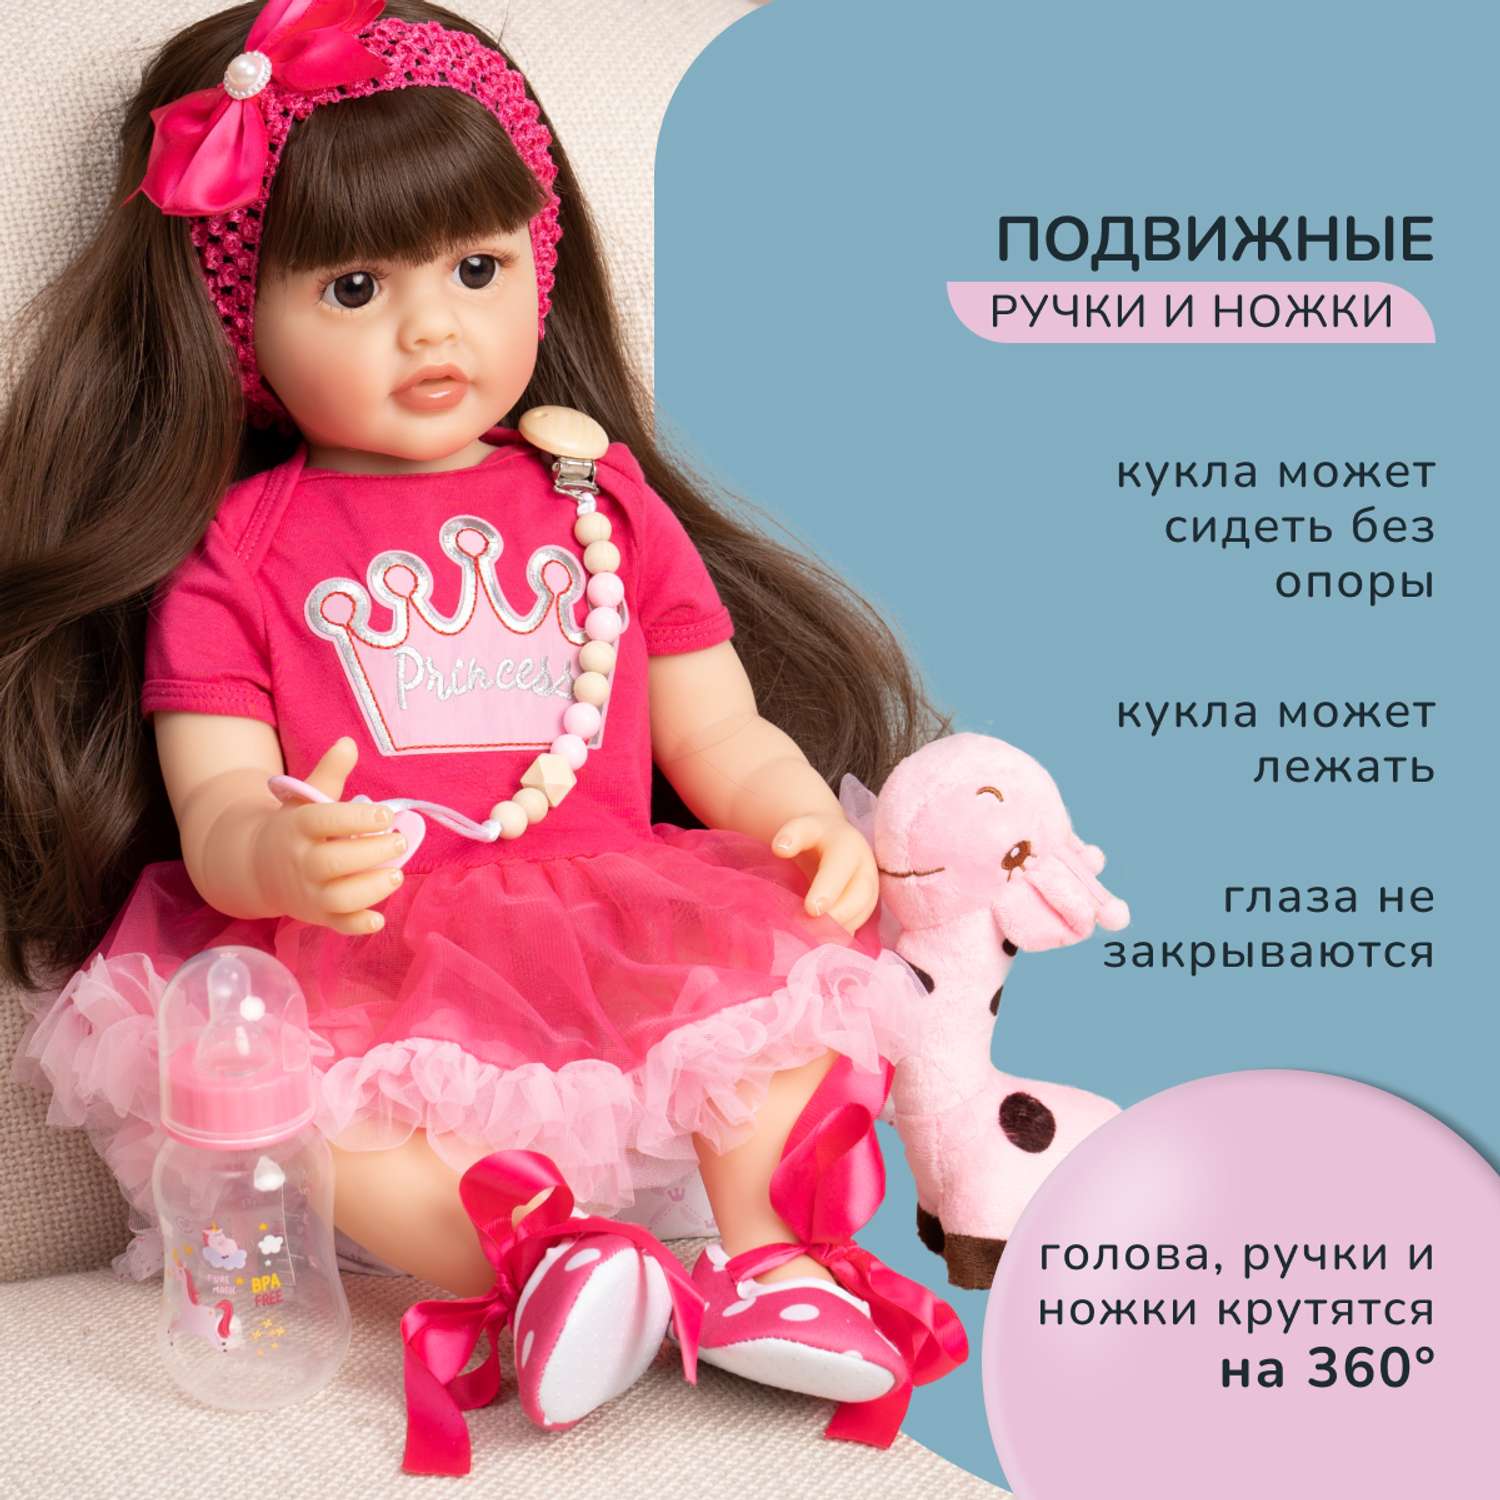 Кукла Реборн QA BABY Мэрилин девочка большая пупс набор игрушки для девочки 55 см 5505 - фото 5